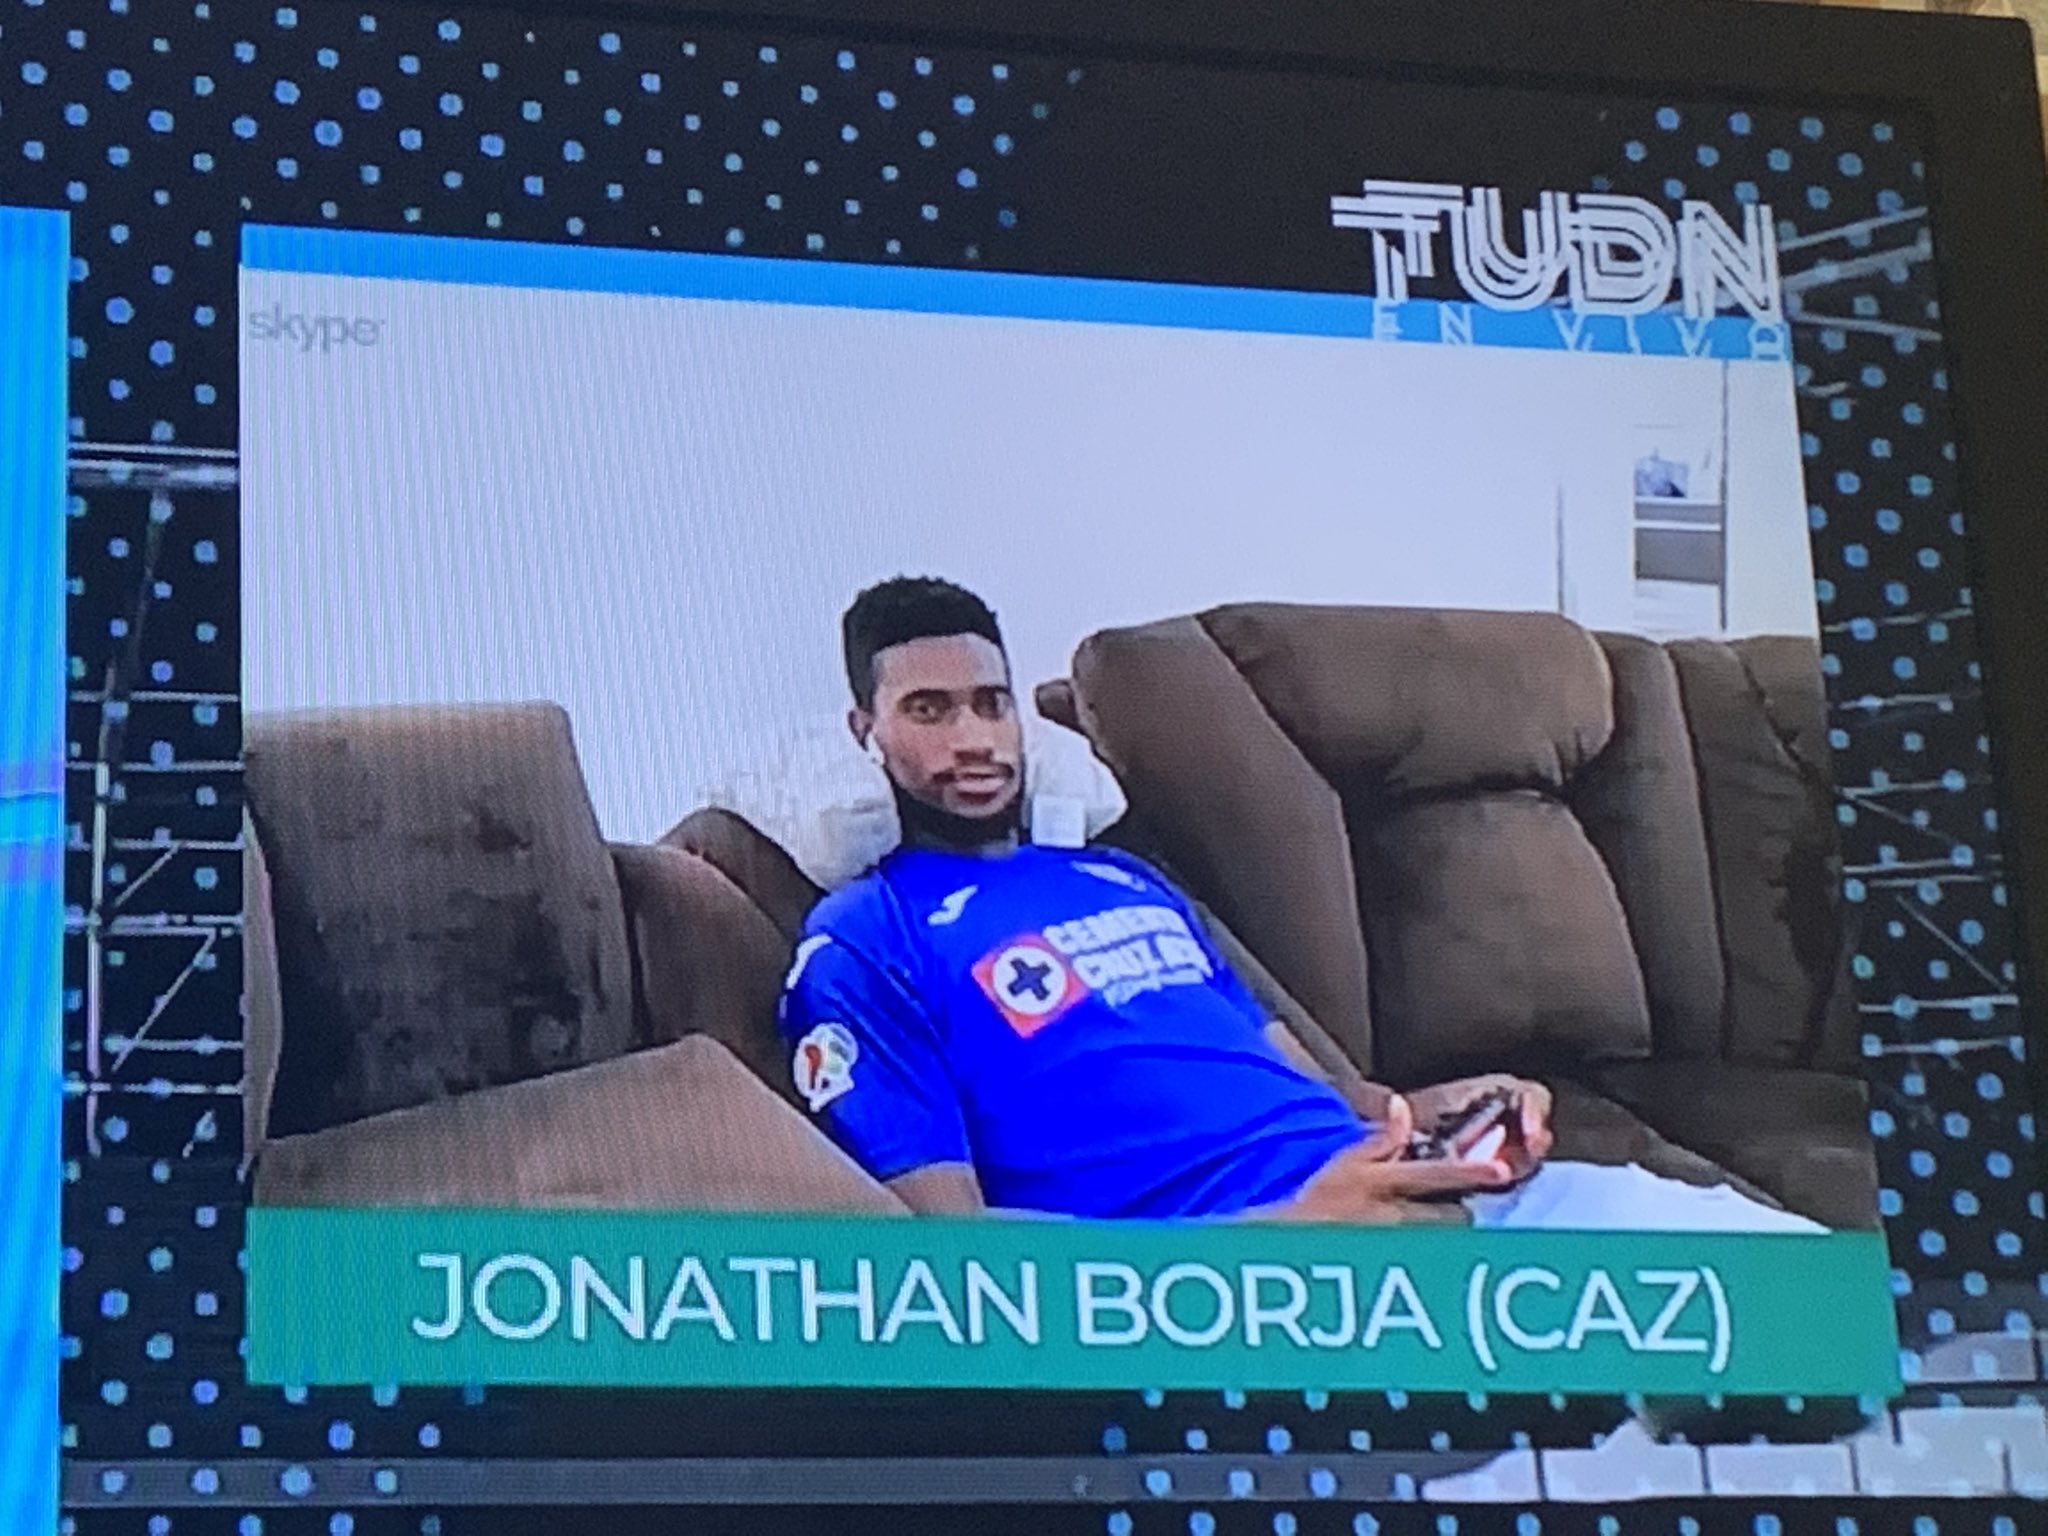 Jonathan Borja tendencia nacional luego de la derrota de Cruz Azul en la E-Liga MX